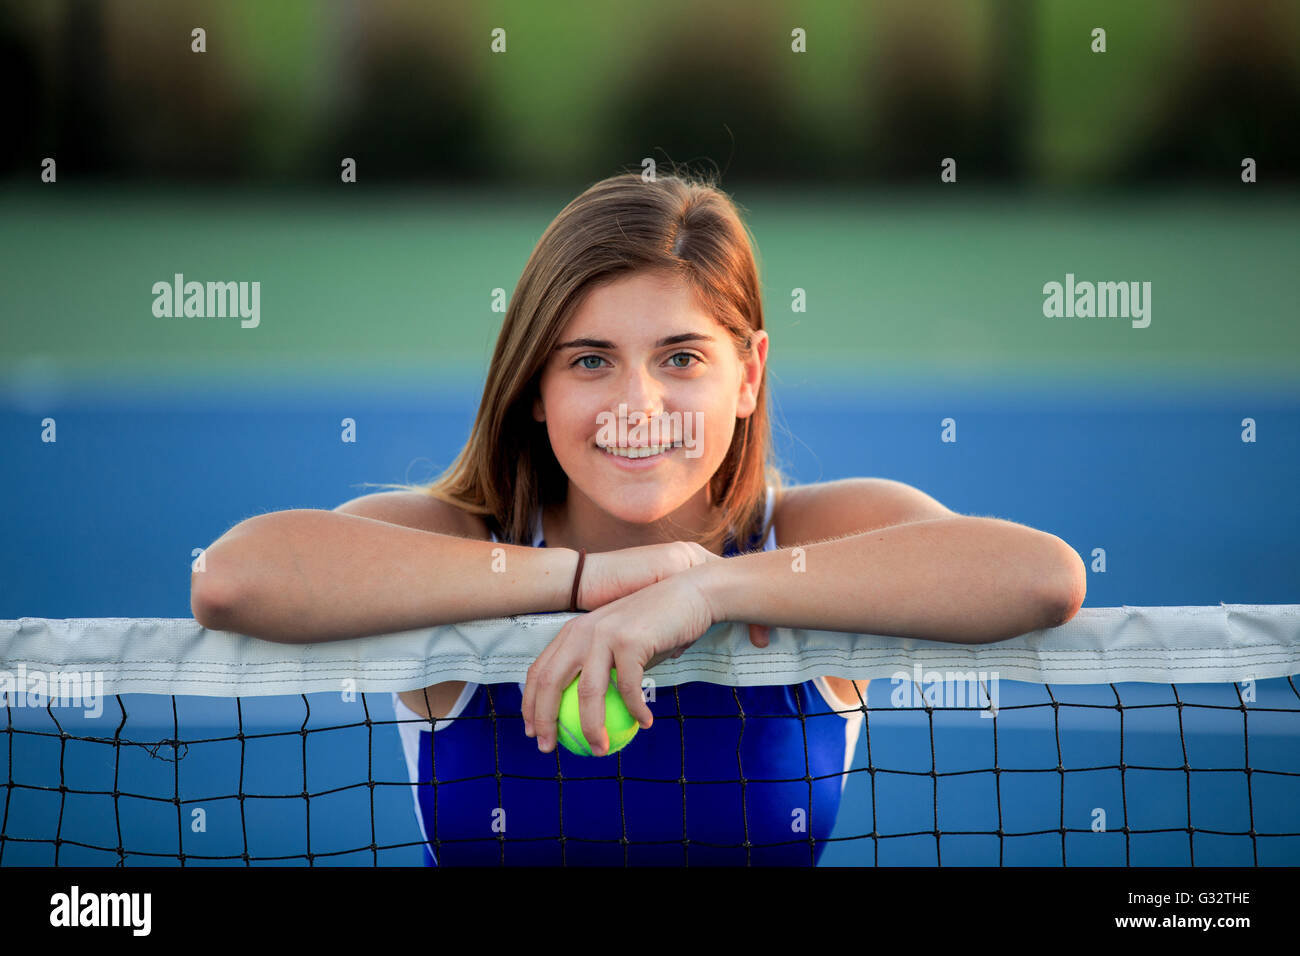 Ritratto di sorridente ragazza adolescente appoggiato su di un campo da tennis net Foto Stock